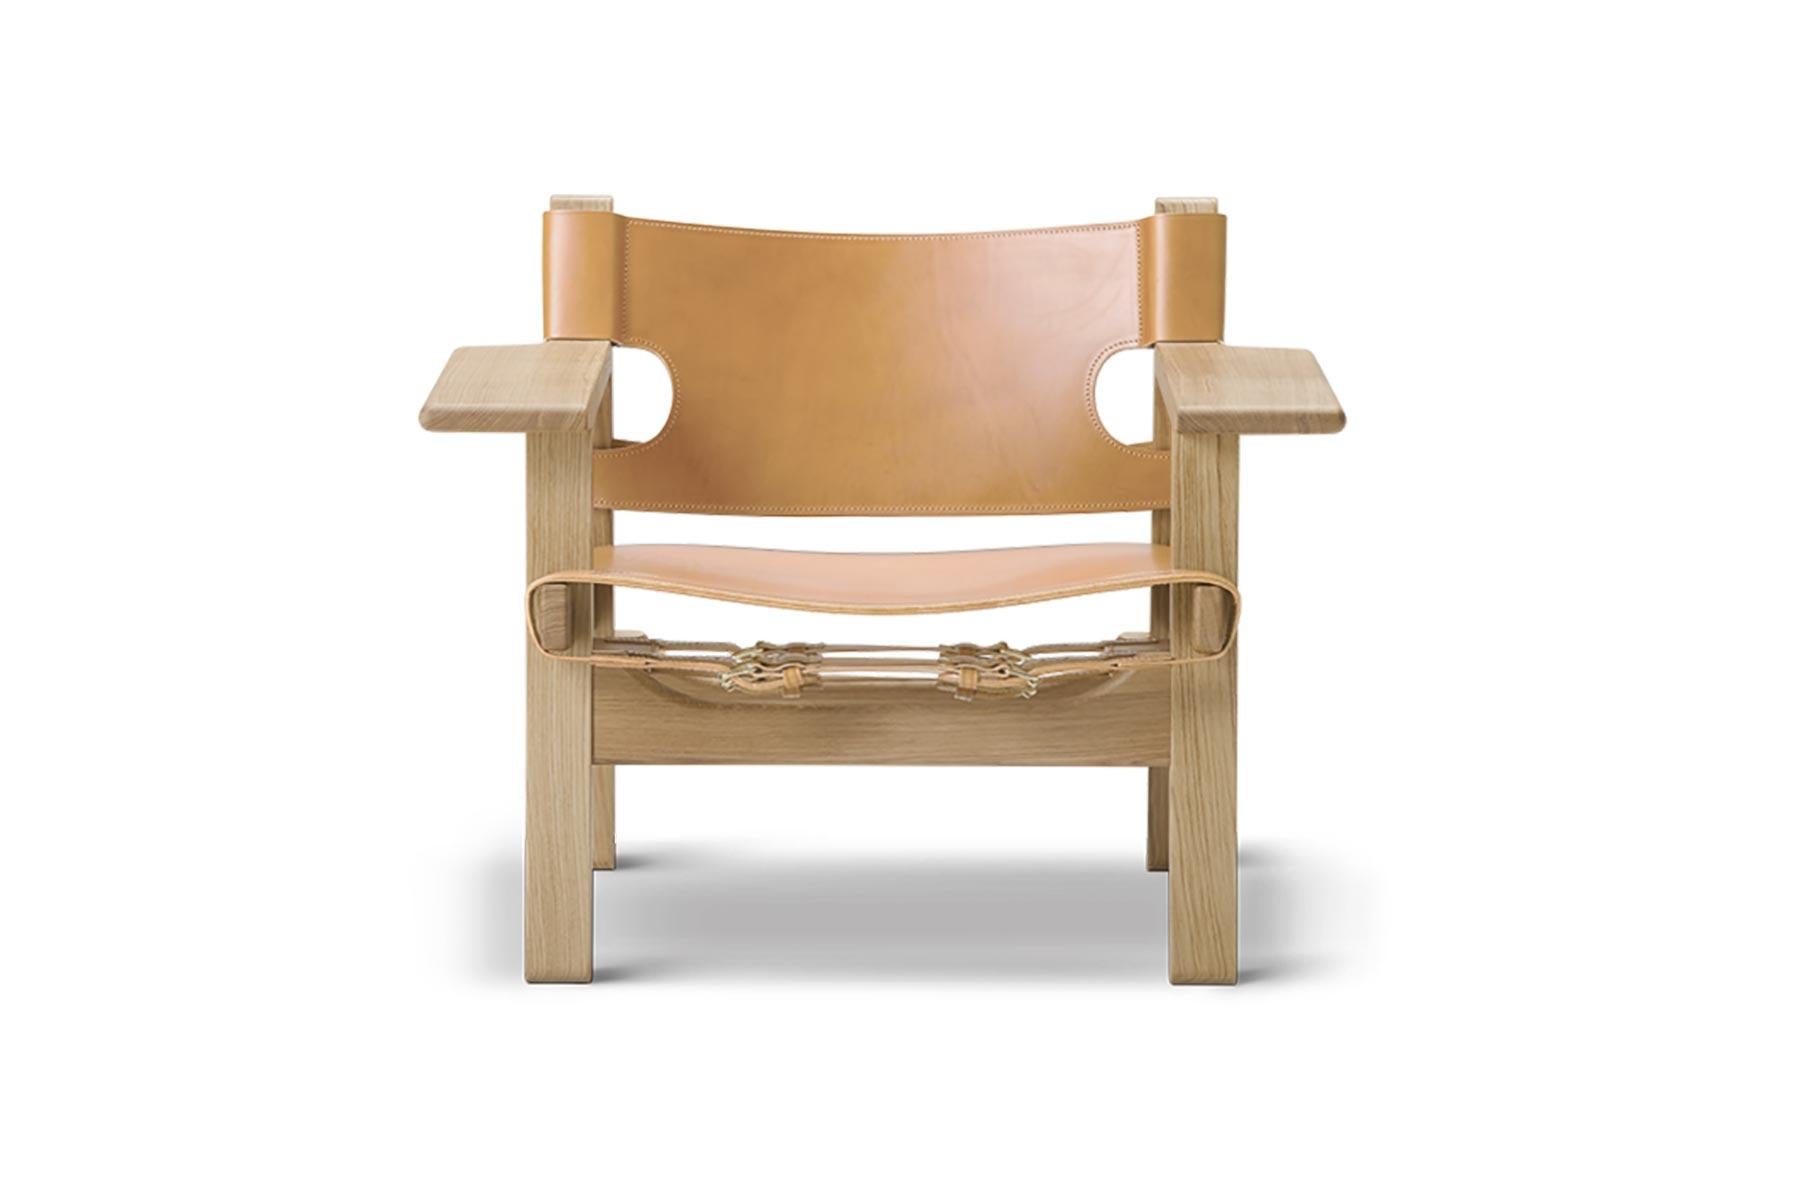 Avec la chaise espagnole, Mogensen a poursuivi son travail sur le chêne massif et le cuir de selle. La chaise a été lancée en 1958 dans le cadre d'une exposition innovante sur l'espace de vie, dans laquelle toutes les tables étaient retirées du sol